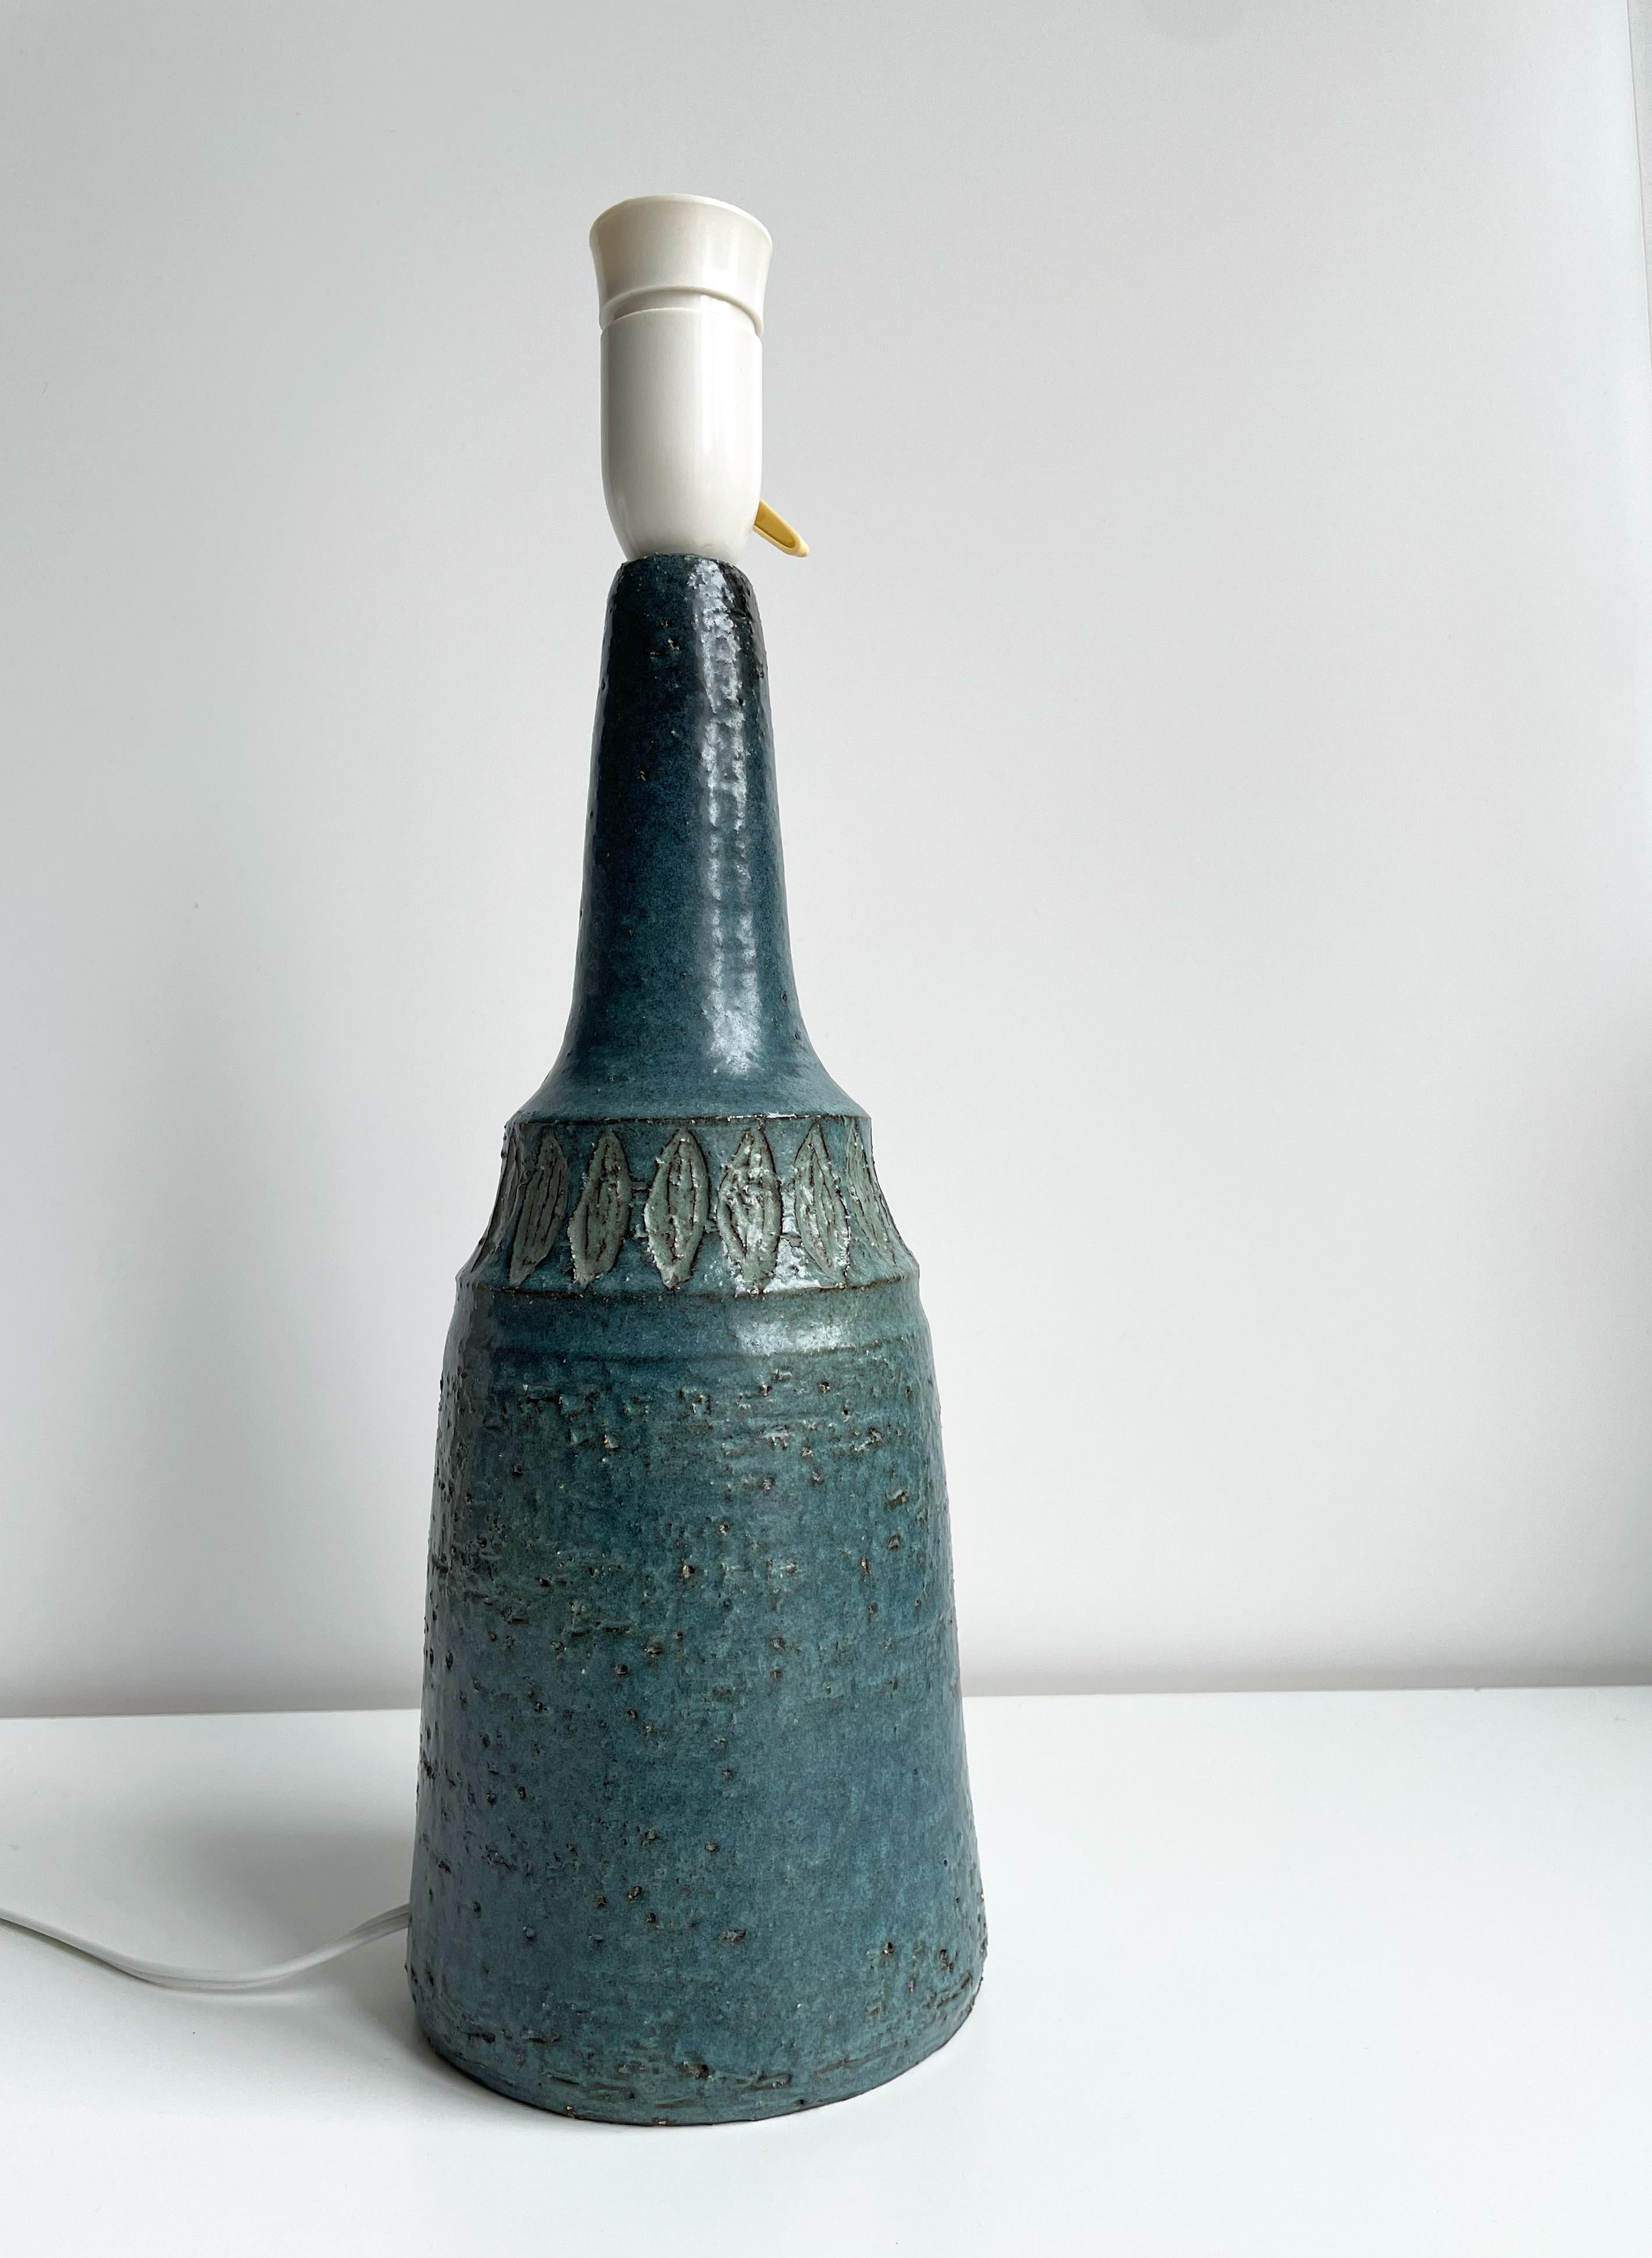 Lampe de table danoise en céramique faite à la main par Sejer Keramikfabrik. Fabriqué sur l'île danoise de Funen dans les années 1960 dans le cadre d'une production limitée. Fabriquée et décorée à la main avec un motif organique vert clair en forme